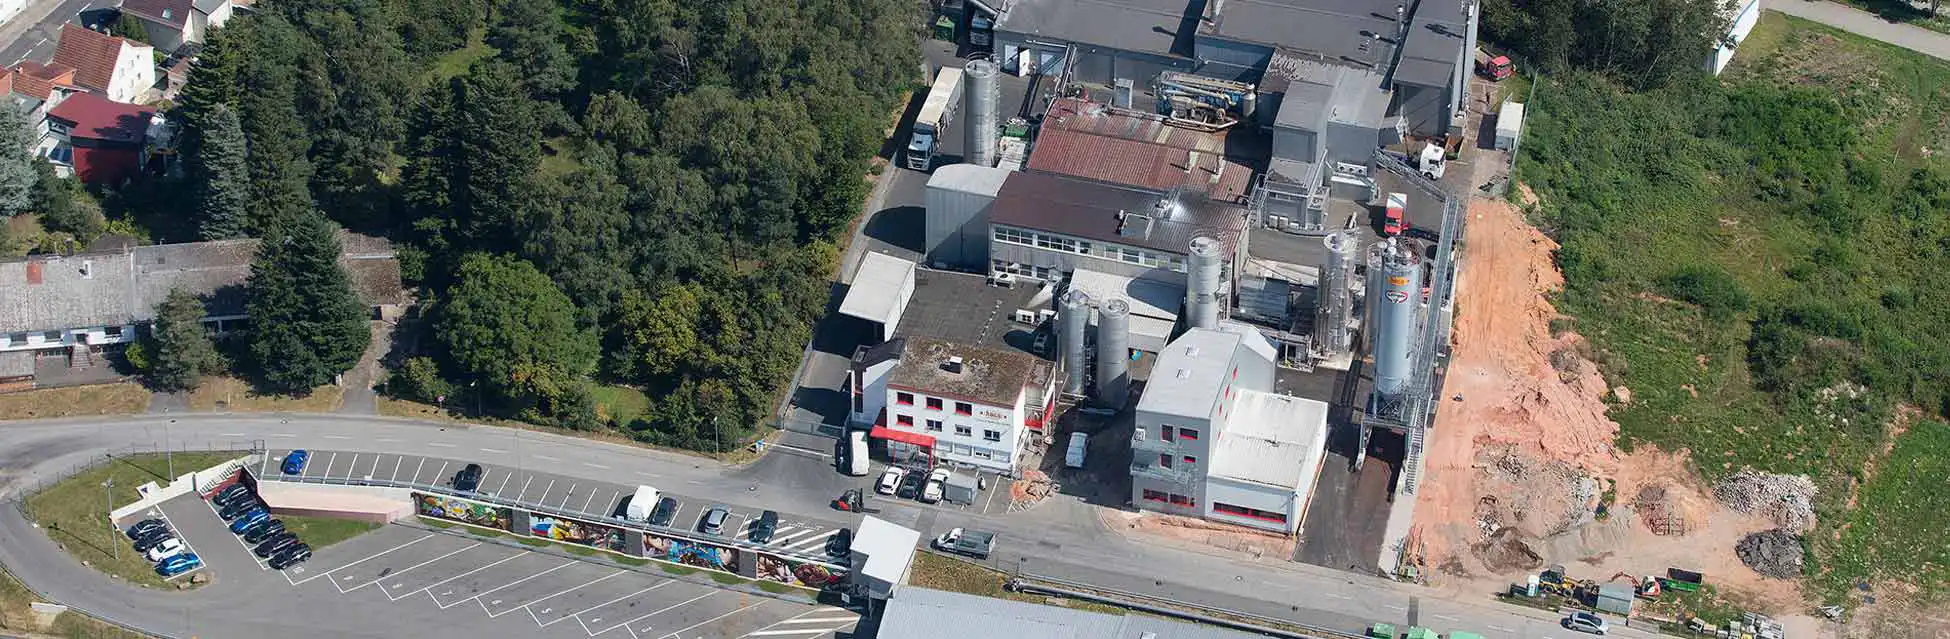 Luftaufnahme von unserem Standort in Bexbach